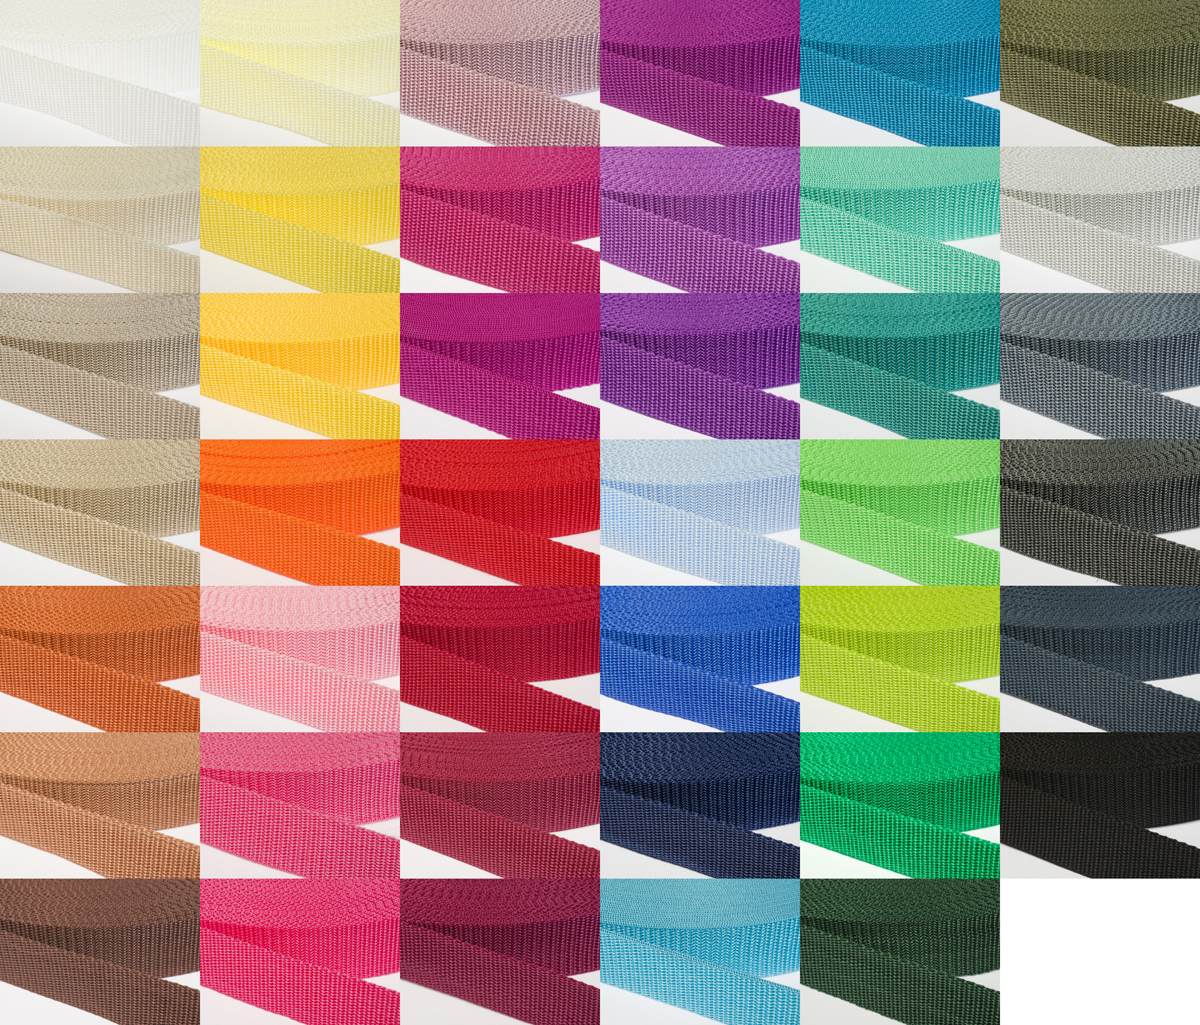 Gurtband 30mm breit aus Polypropylen in 41 Farben 05 - ockerbraun 6 Meter